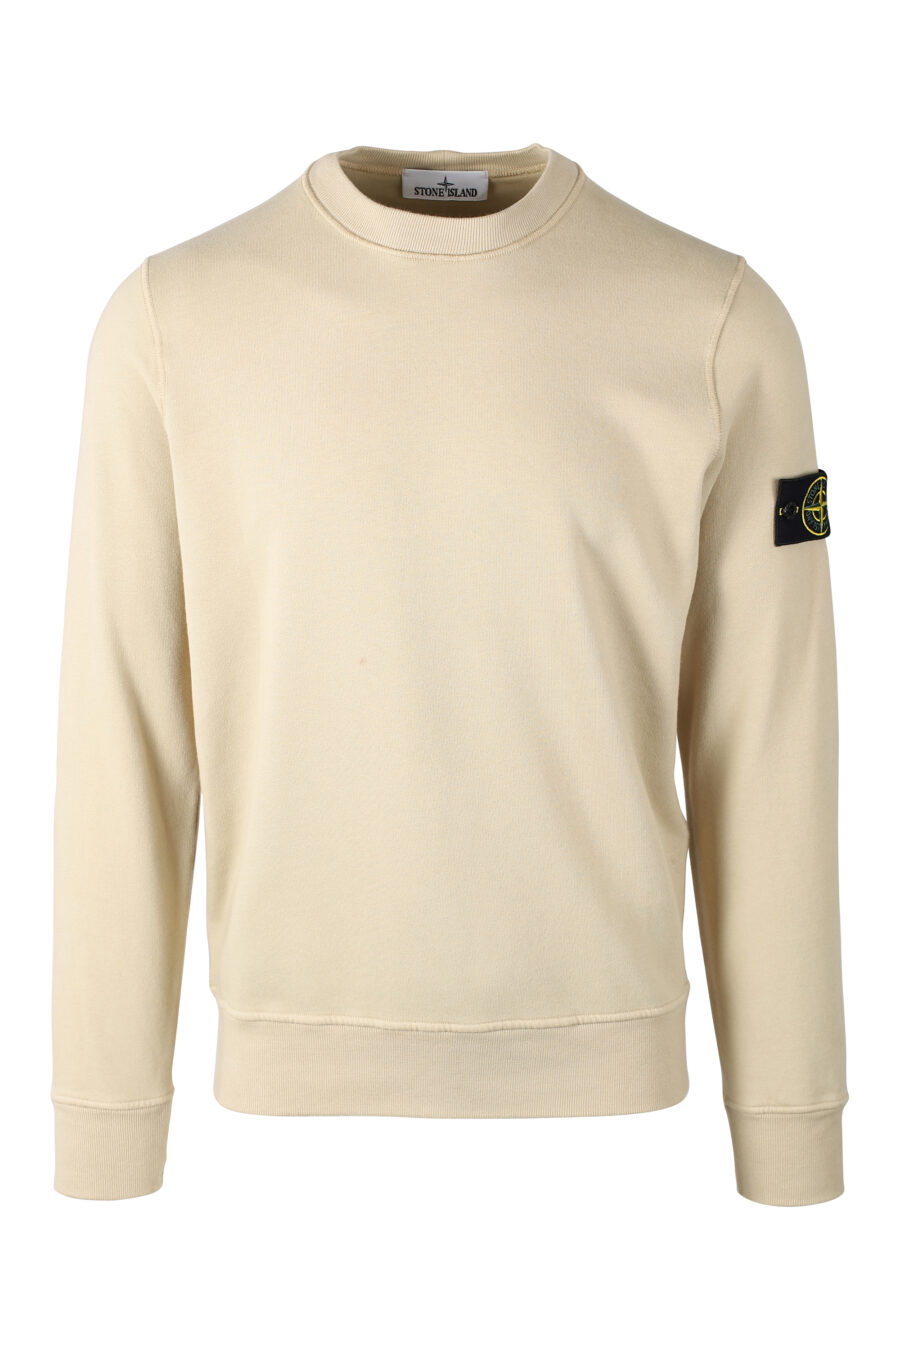 Beigefarbenes Sweatshirt mit seitlichem Logoaufnäher - IMG 8355